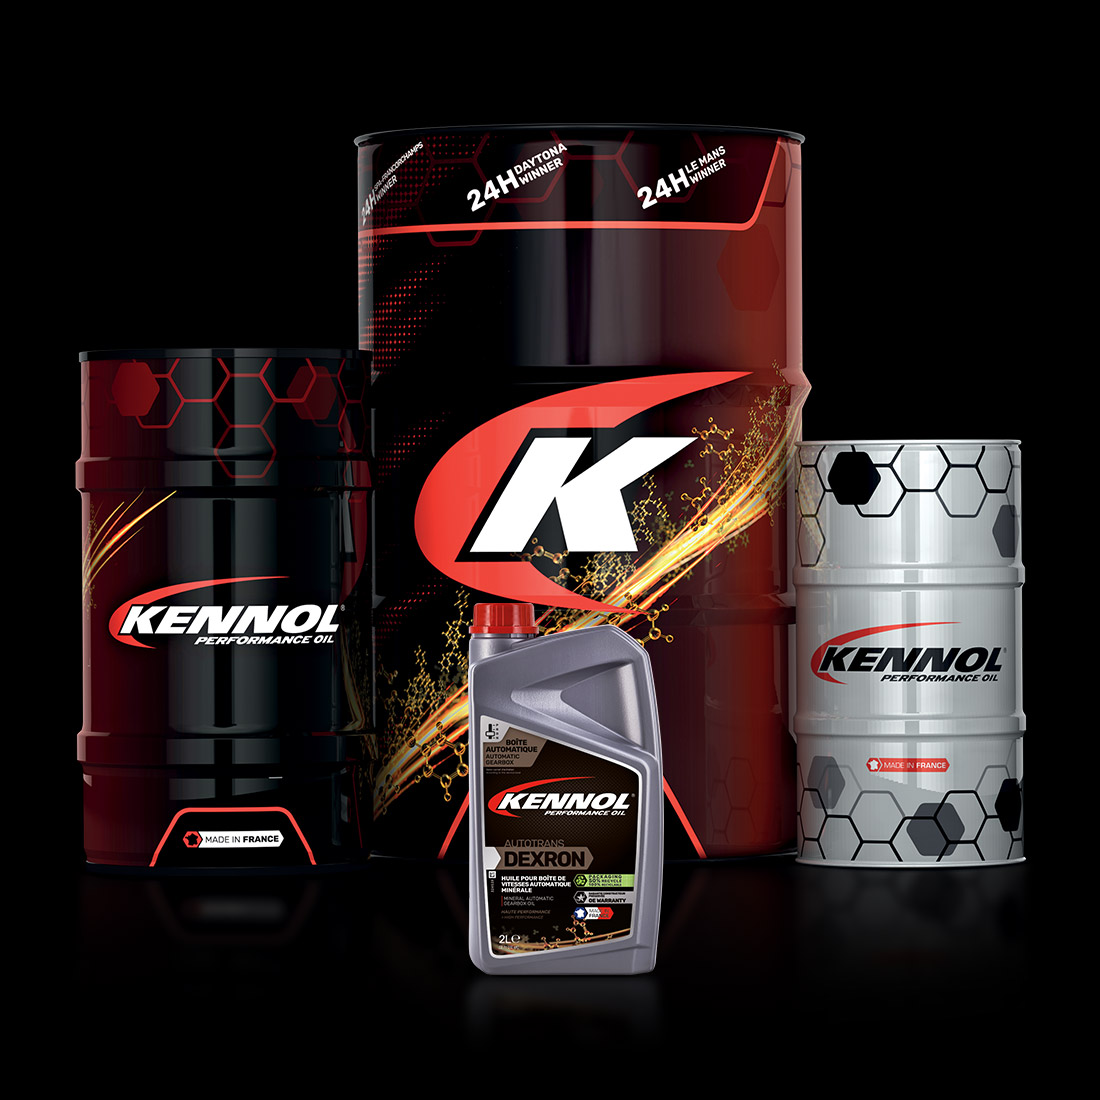 KENNOL AUTOTRANS DEXRON range packshot